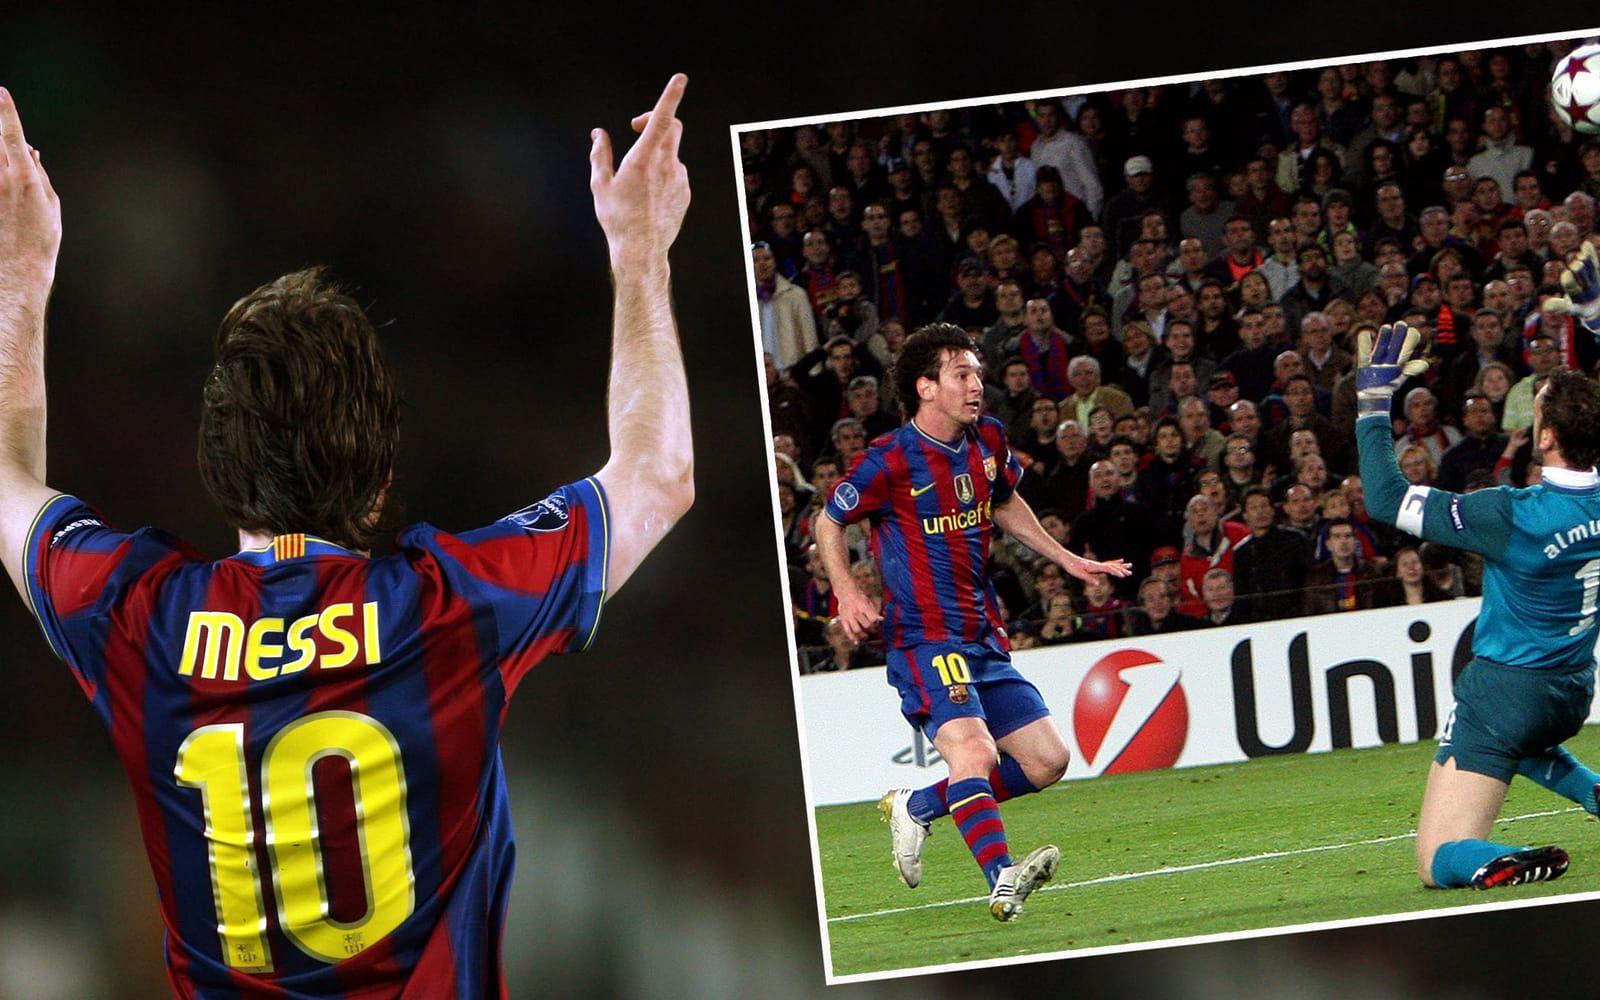 2010. Vinnare. Lionel Messi, Argentina och Barcelona. Hans lagkamrater Andres Iniesta (tvåa) och Xaxi (trea) var också med i racet. Foto: Bildbyrån